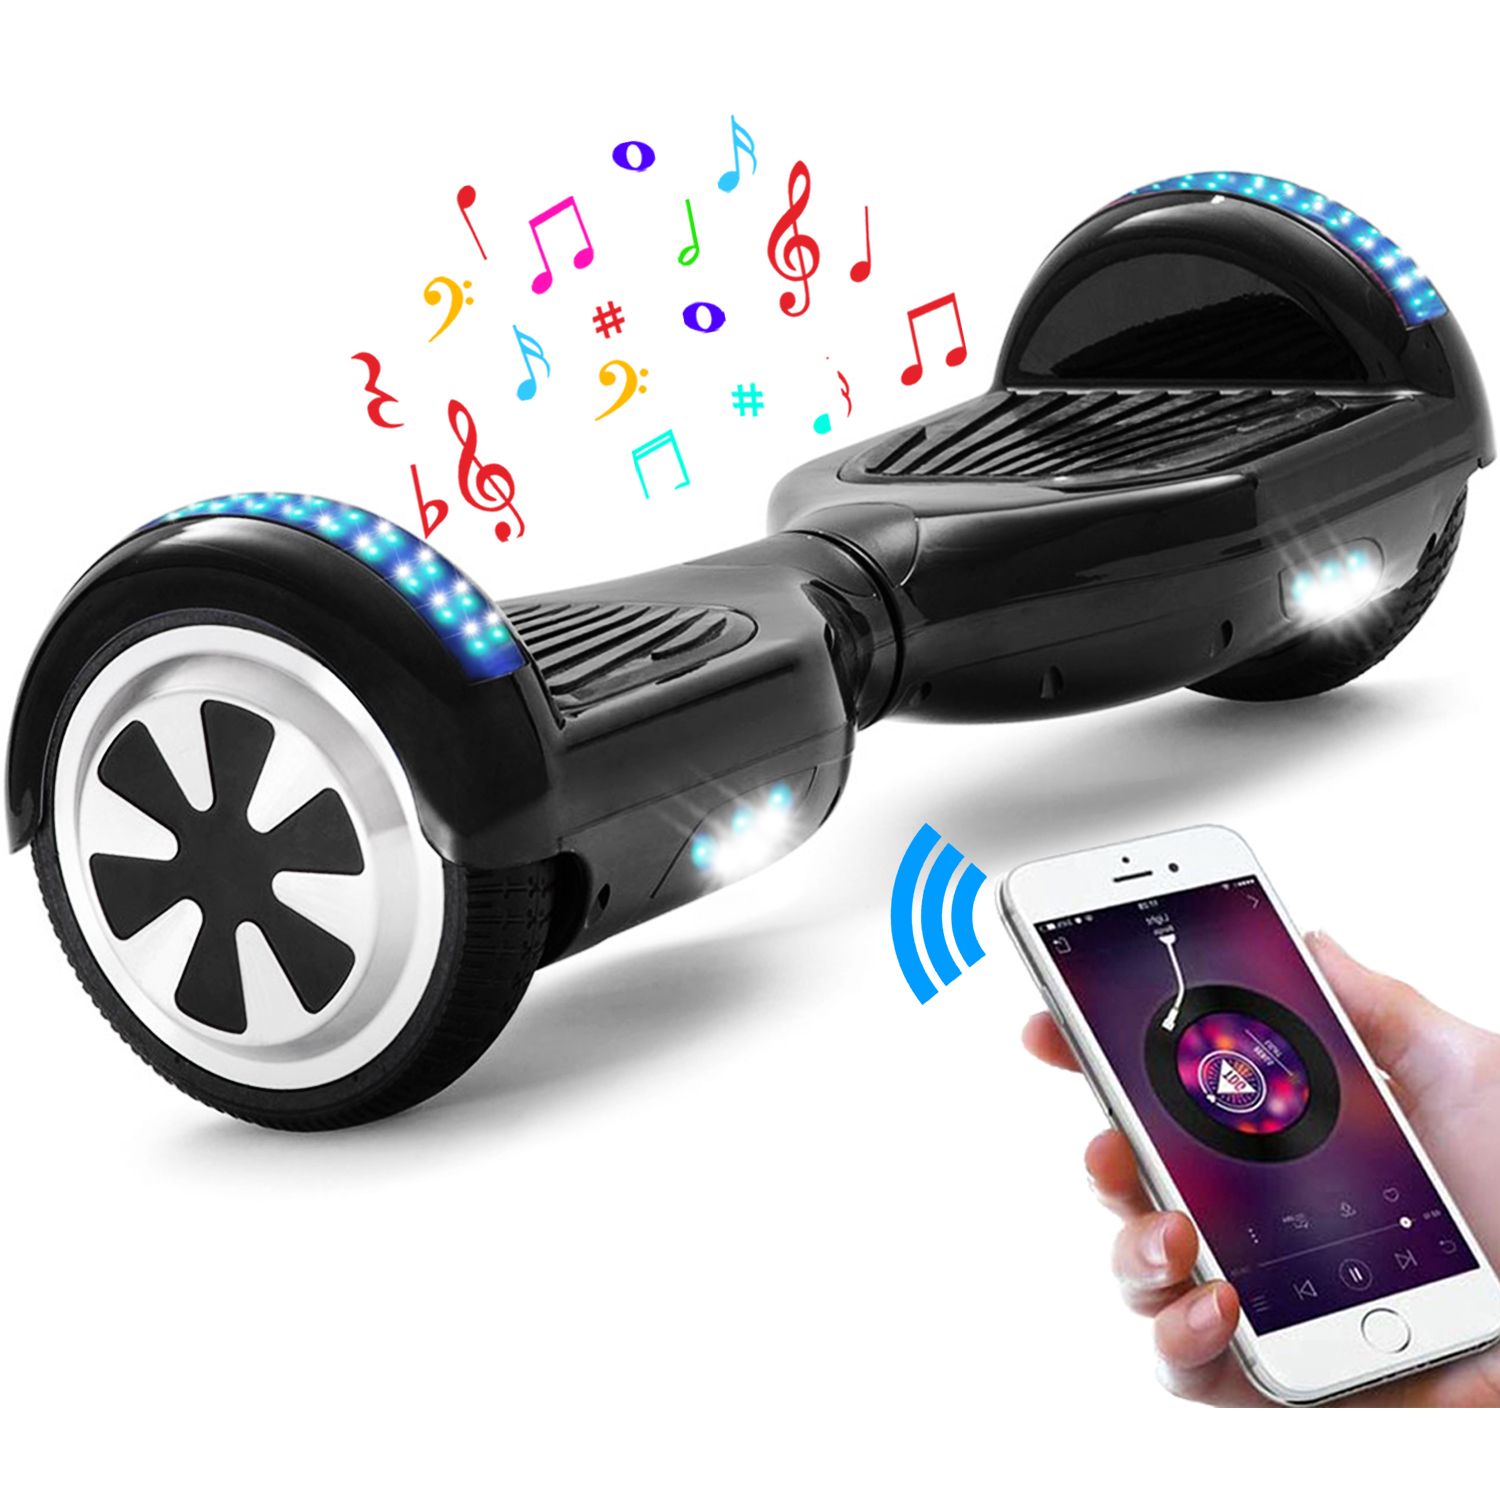 Neues 6,5" Hoverboard schwarz mit Bluetooth Musik Lautsprecher und LED Licht - 500W 12km/h